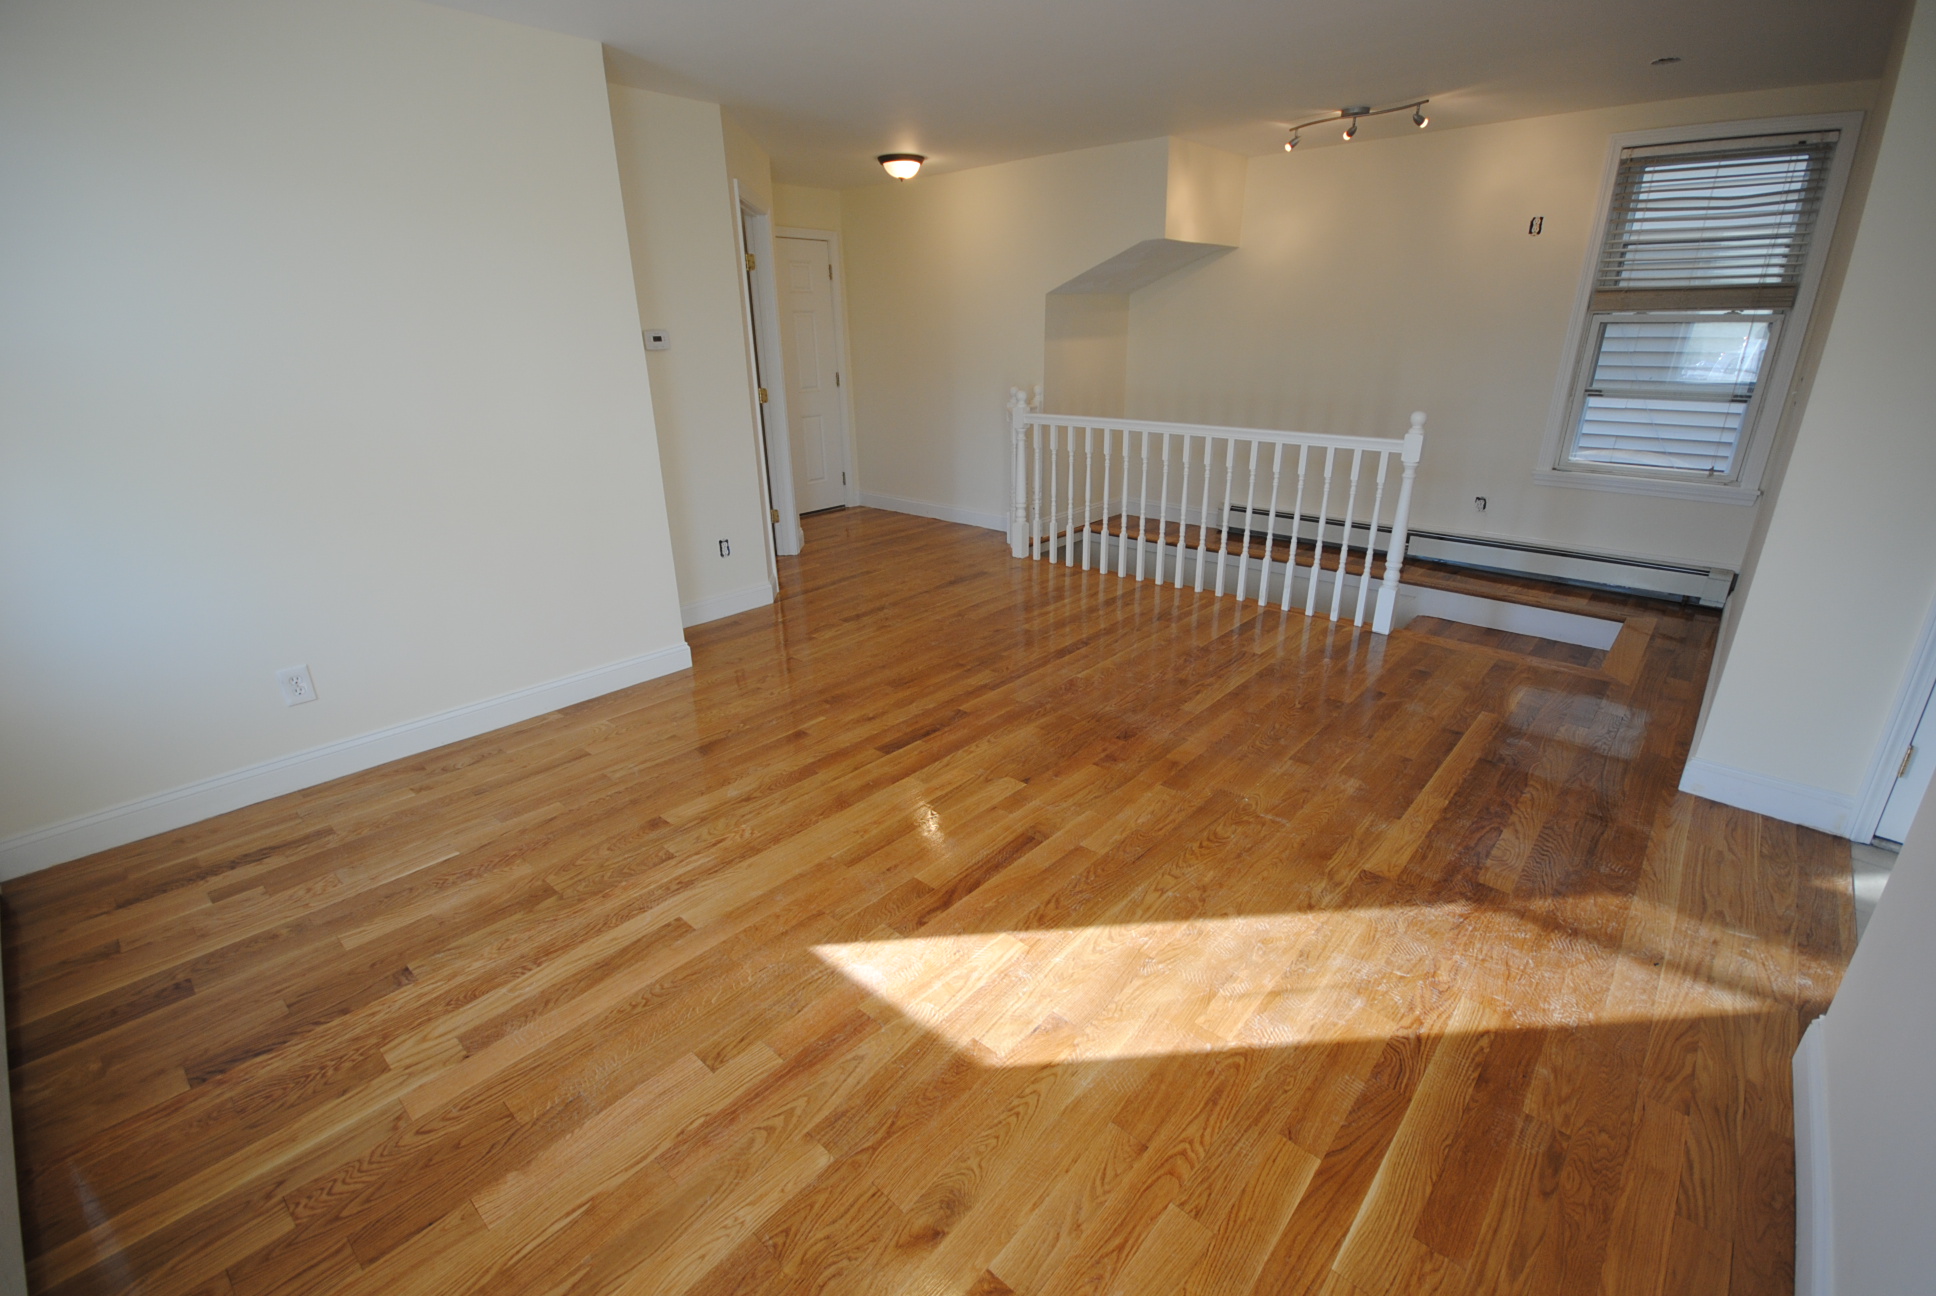 Photos of apartment on Trenton,Boston MA 02128